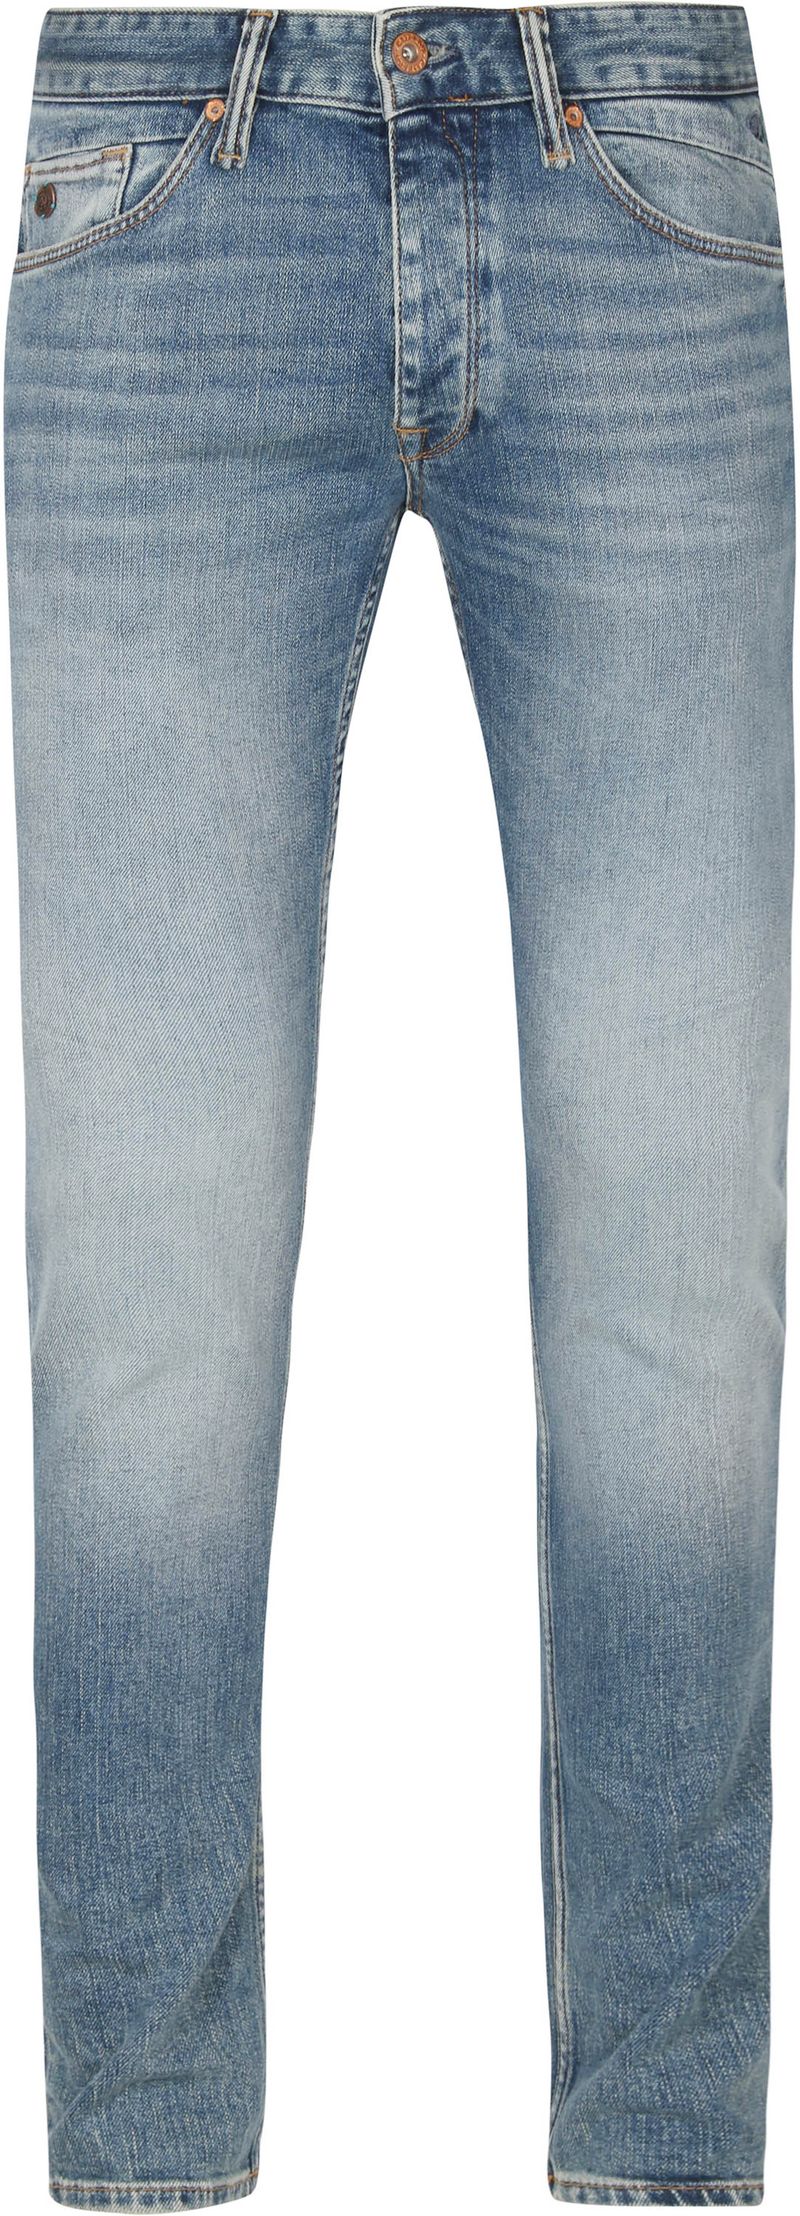 Cast Iron Riser Jeans Clear Sky Blau - Größe W 29 - L 32 günstig online kaufen